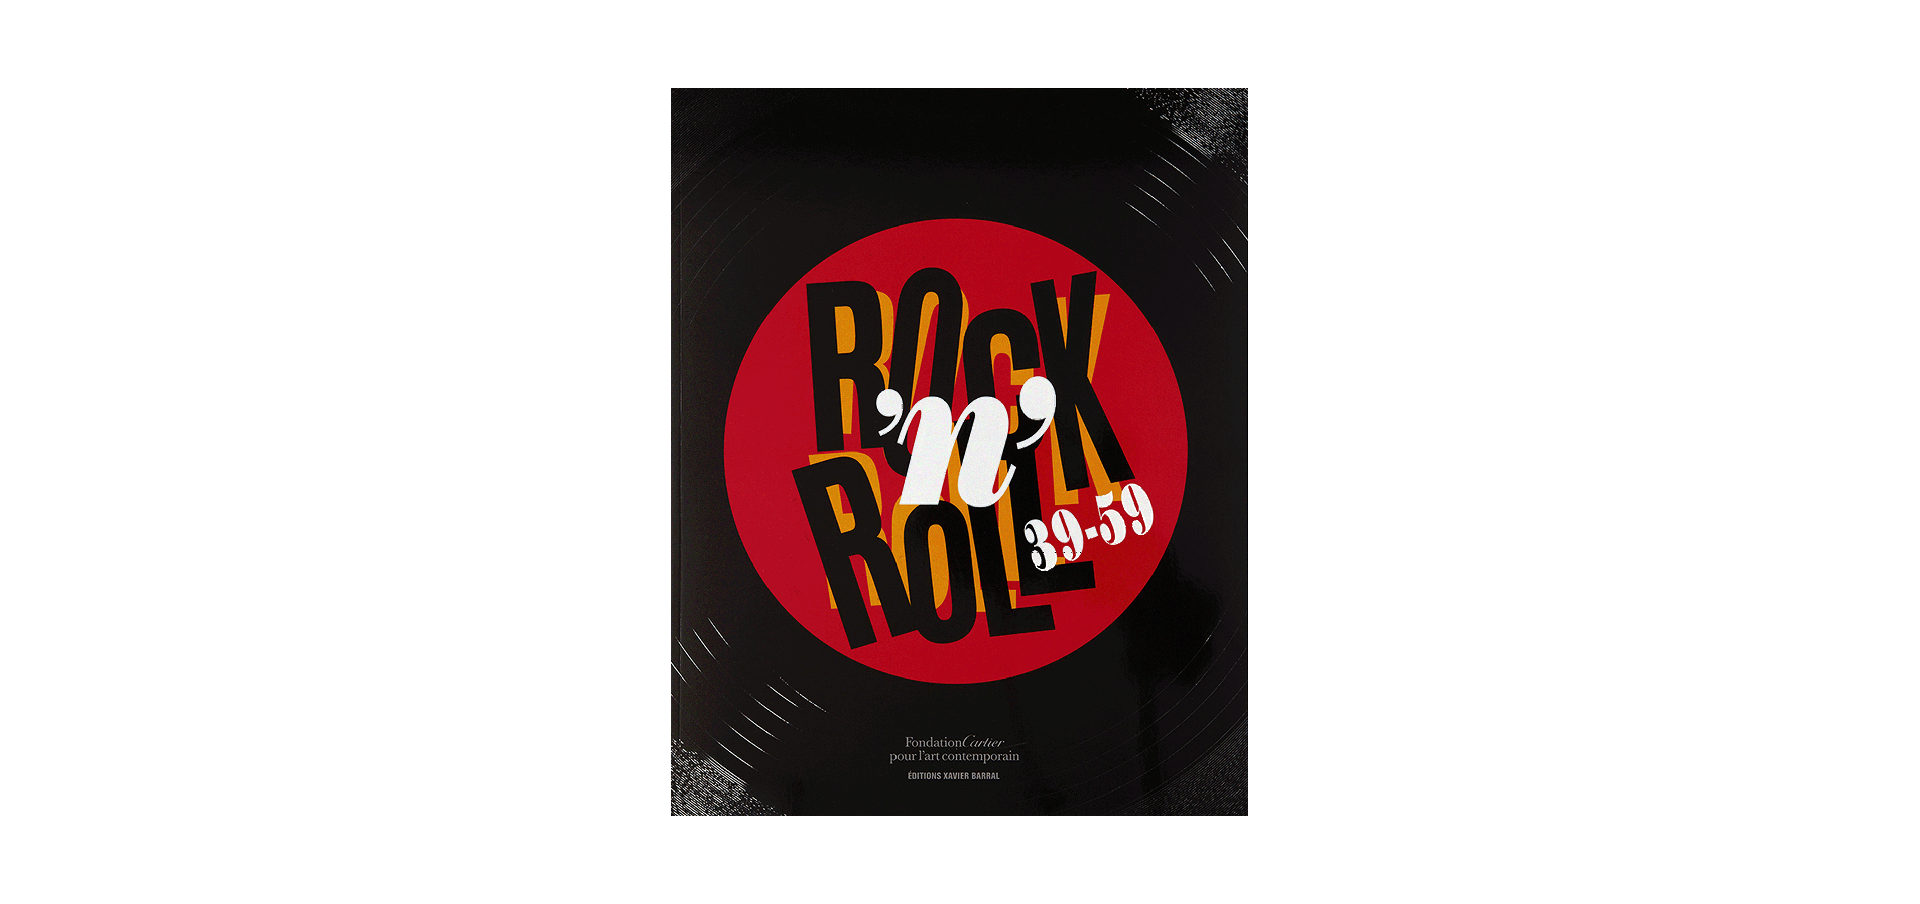 Rock’n’Roll 39-59 